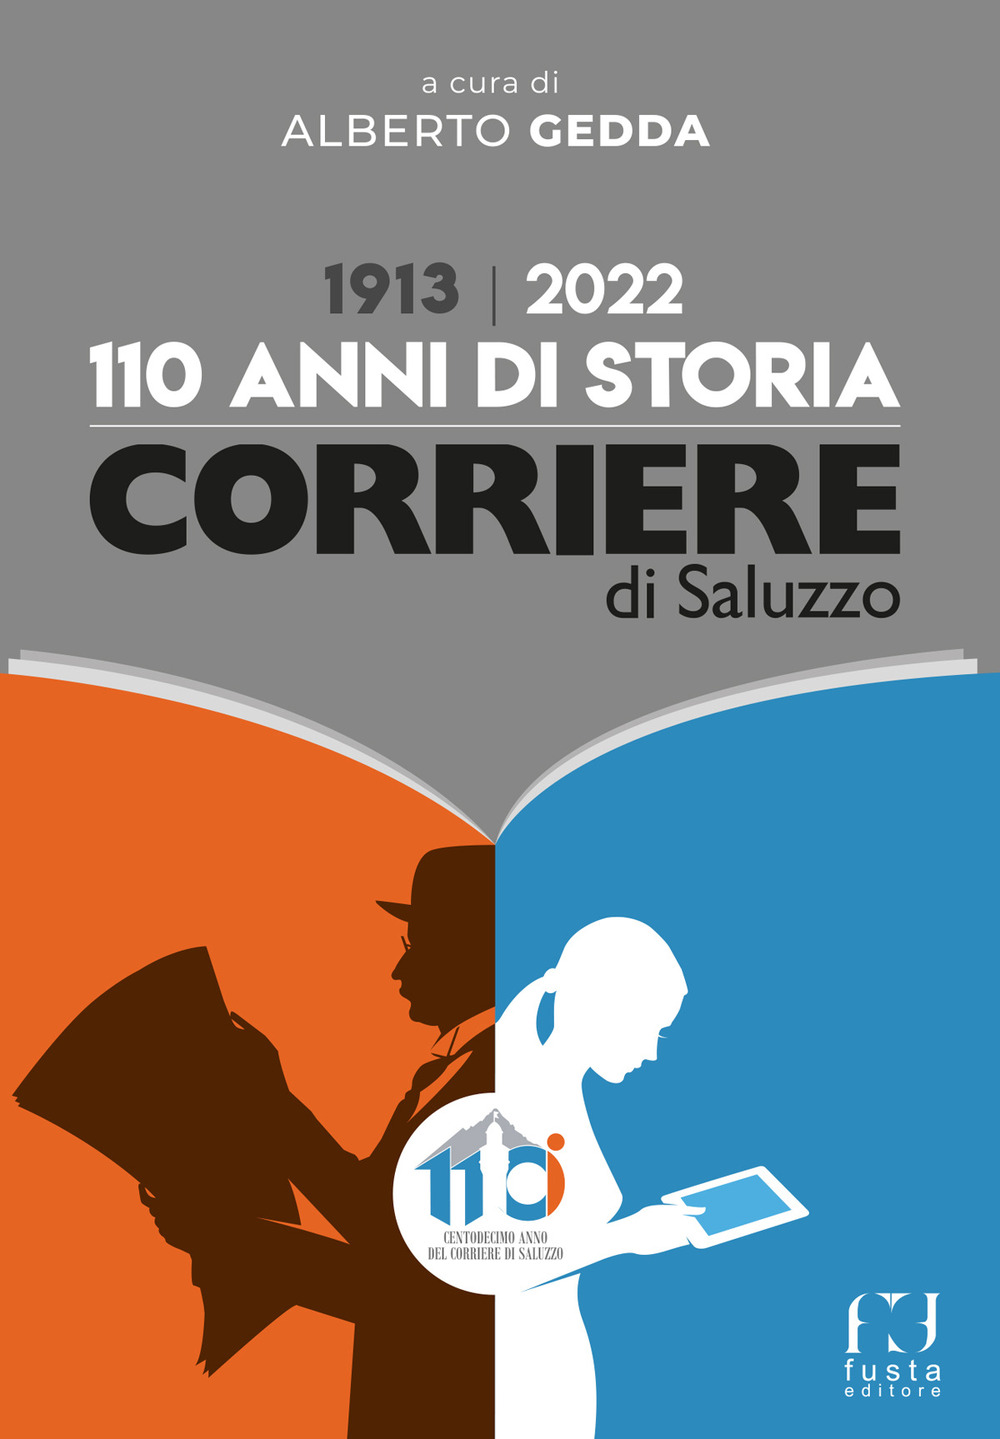 Corriere di Saluzzo, 1913-2022. 110 anni di storia